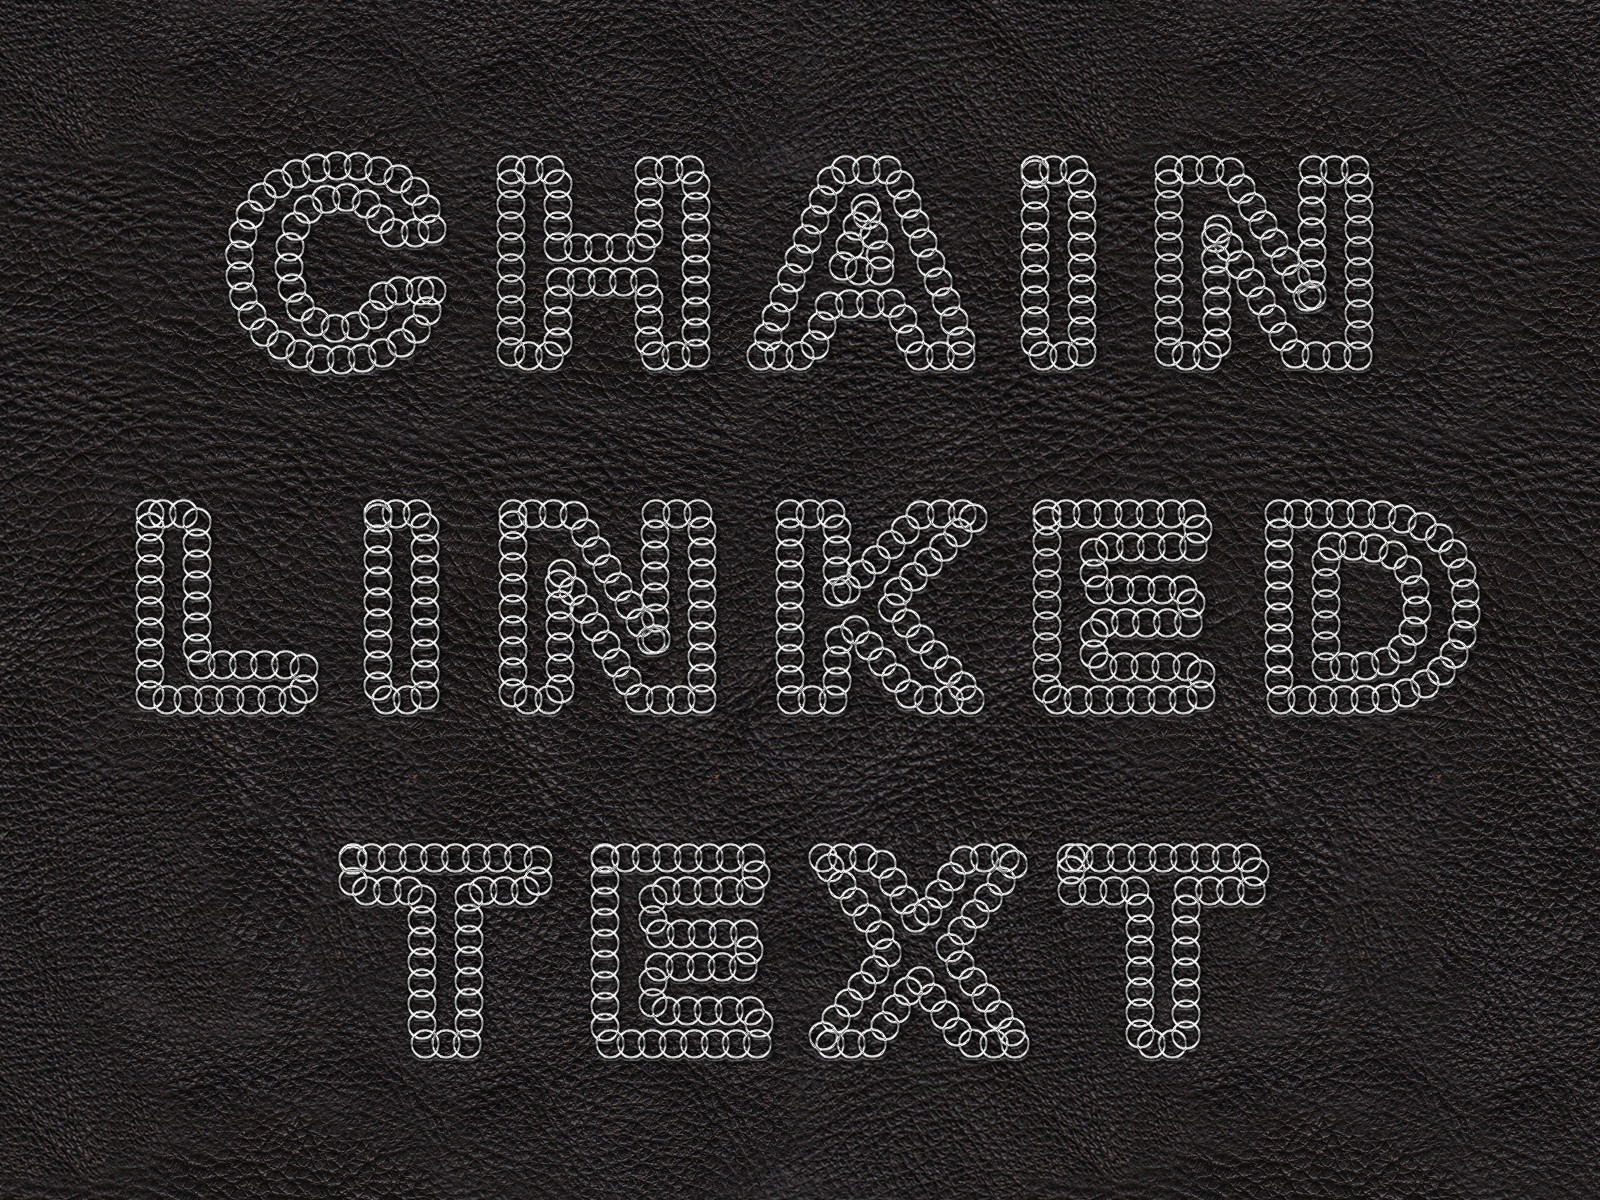 Chain_Text_Pocholo.JPG